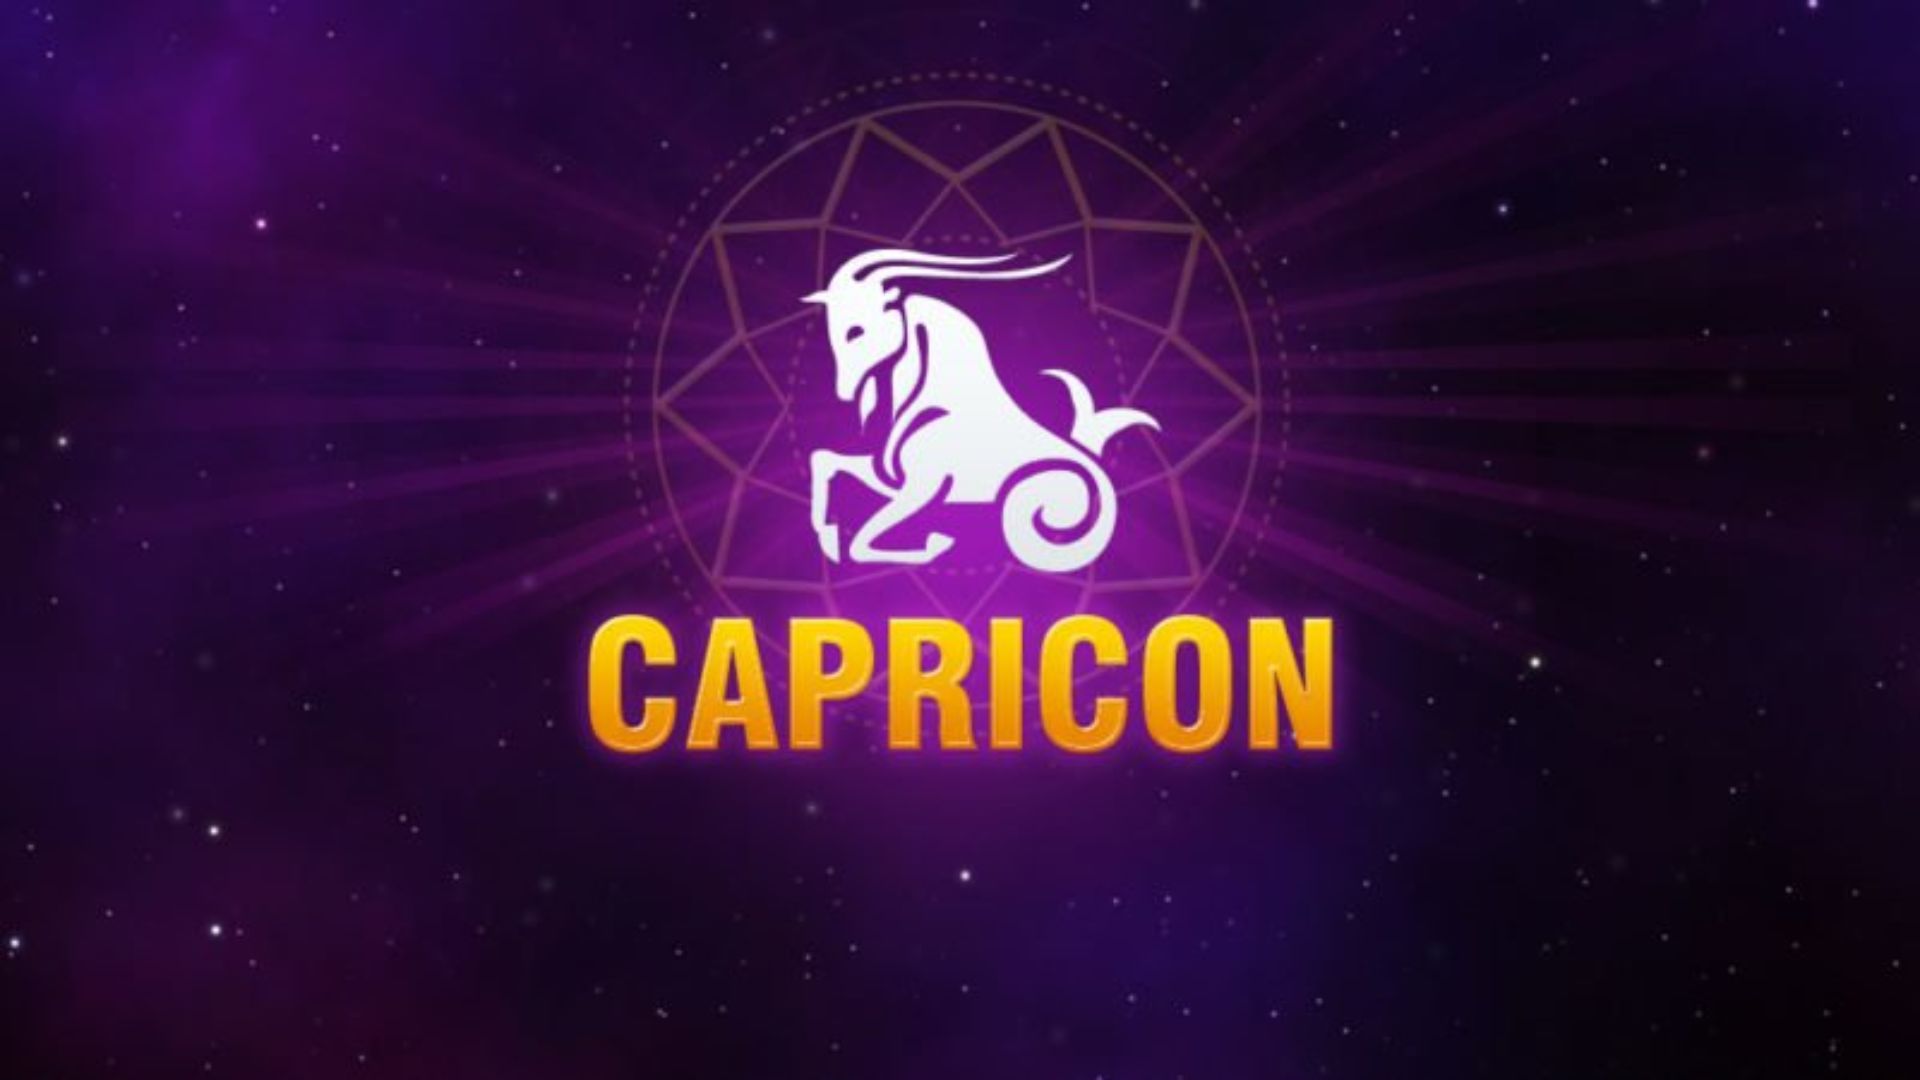 Capricon Zodiac Sign